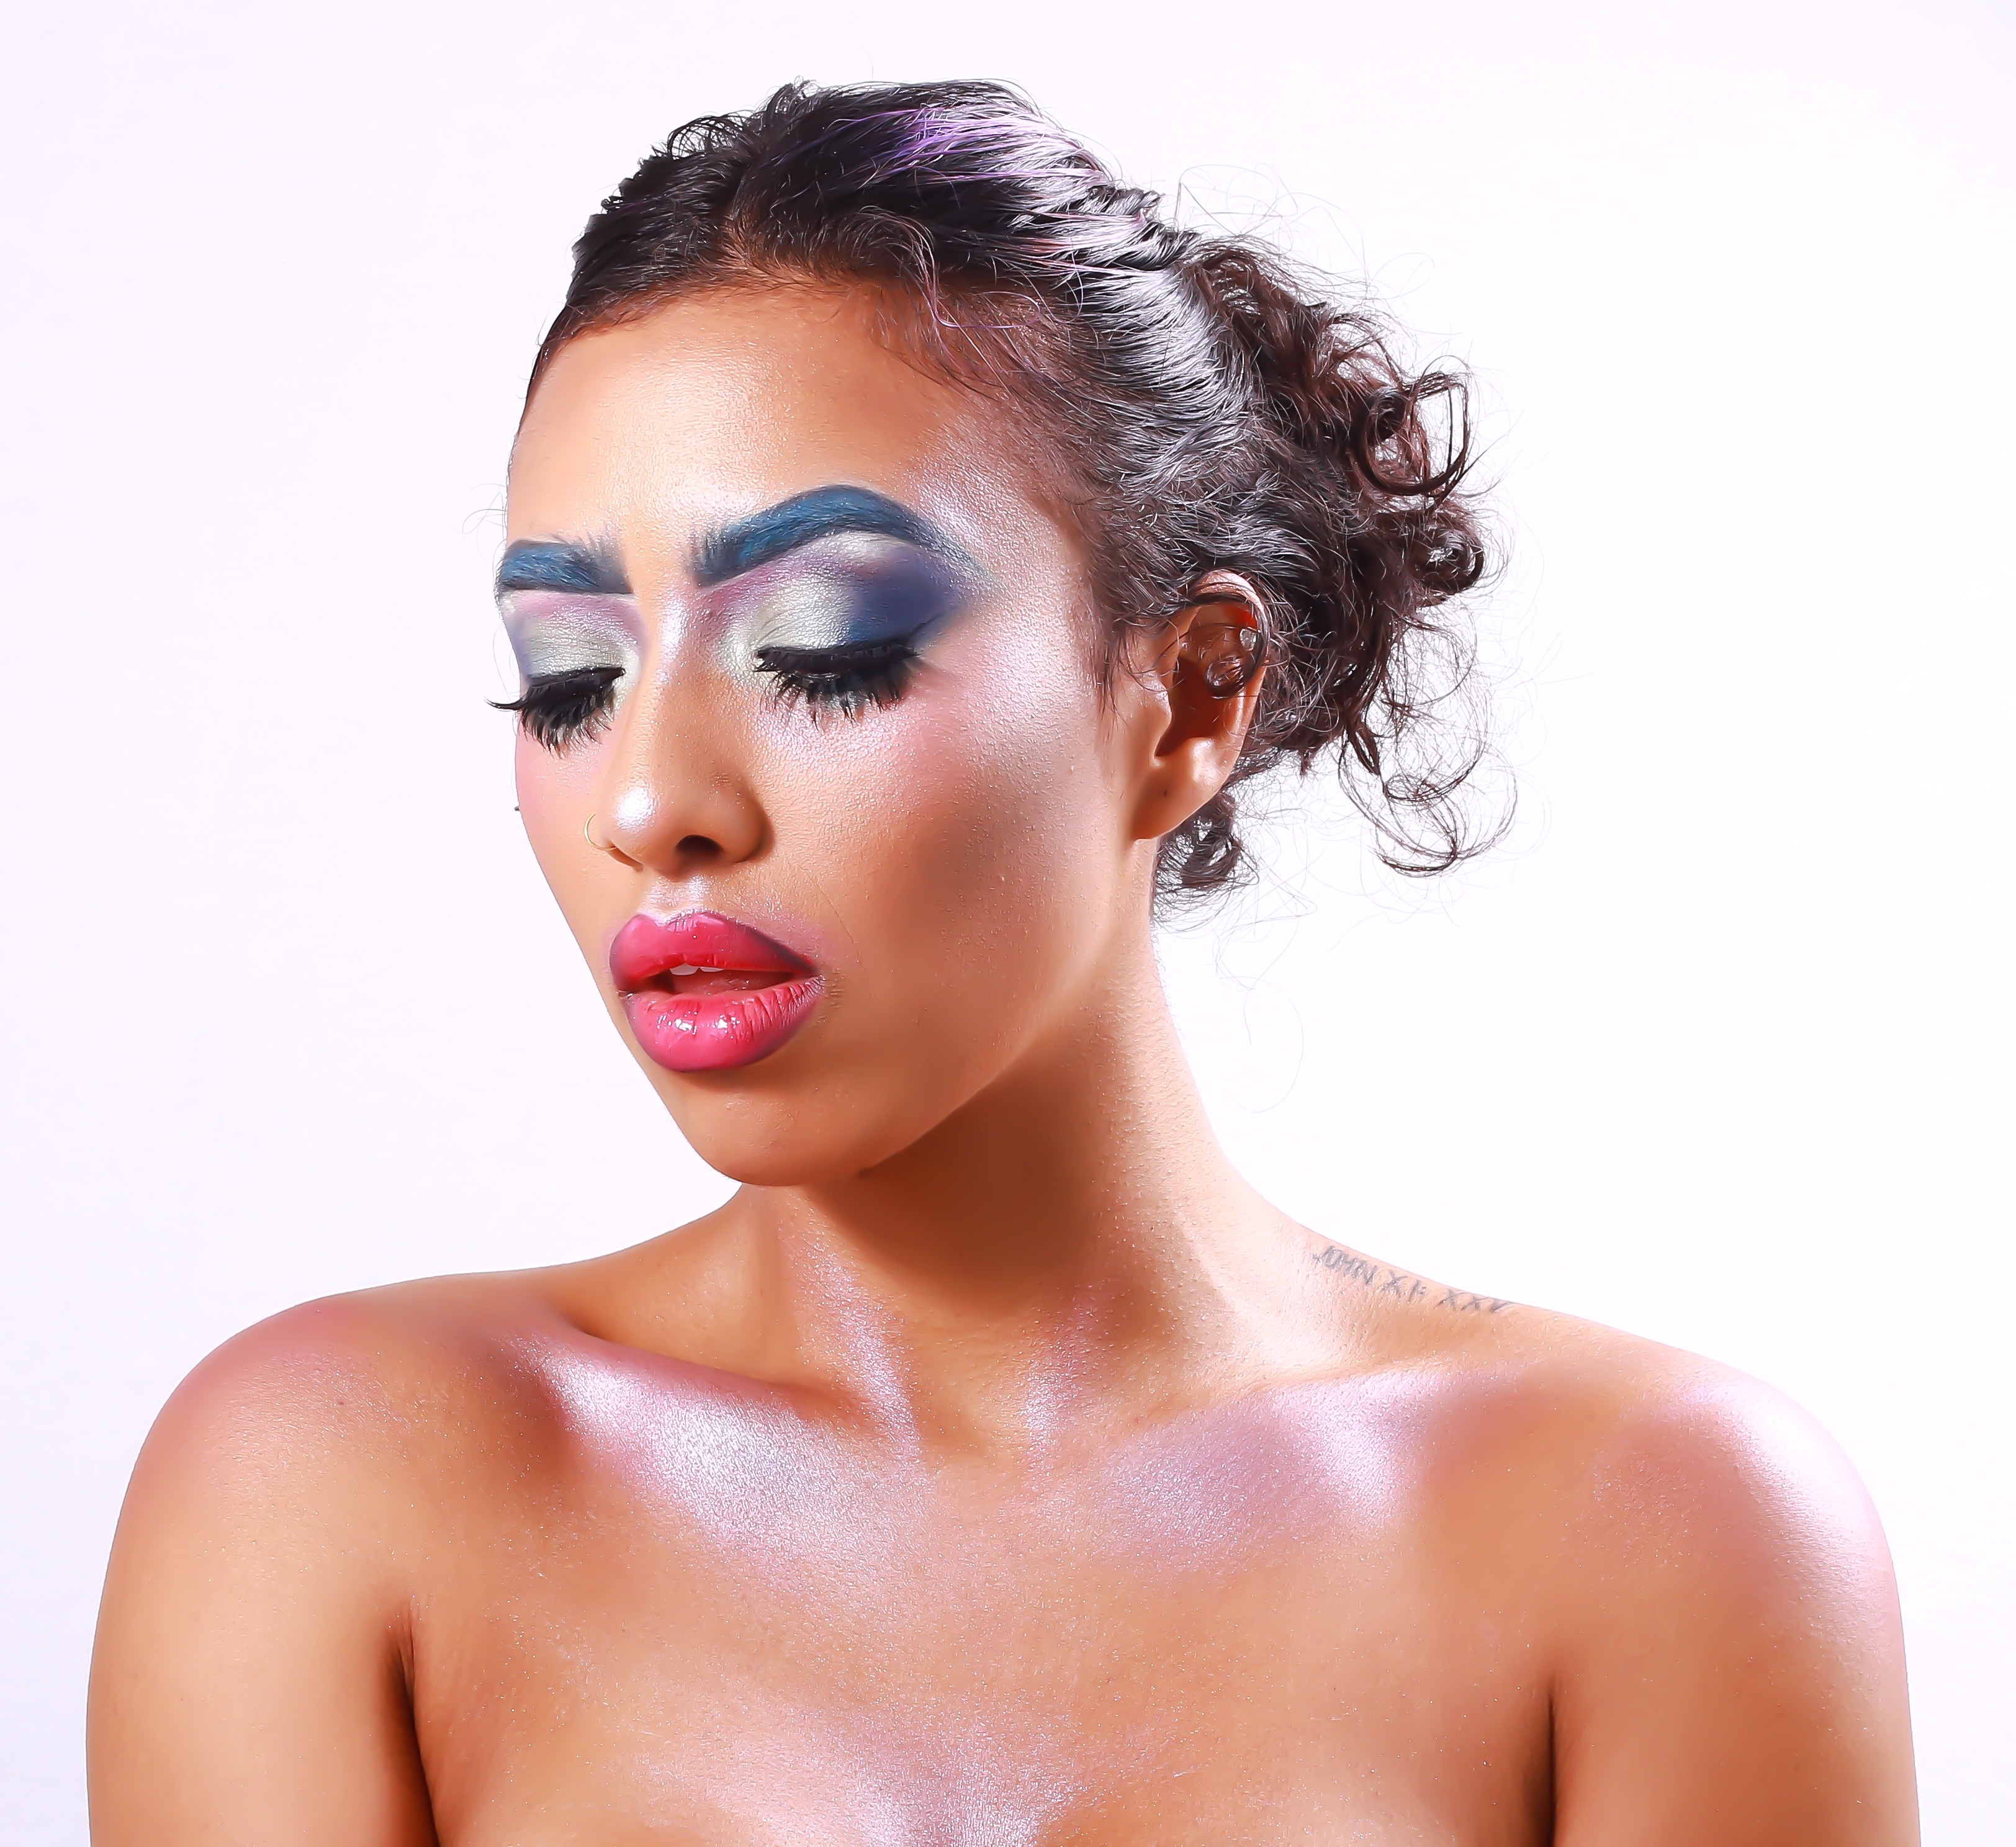 Too Much Makeup | Ask Setareh | Natalie Setareh Makeup Artist